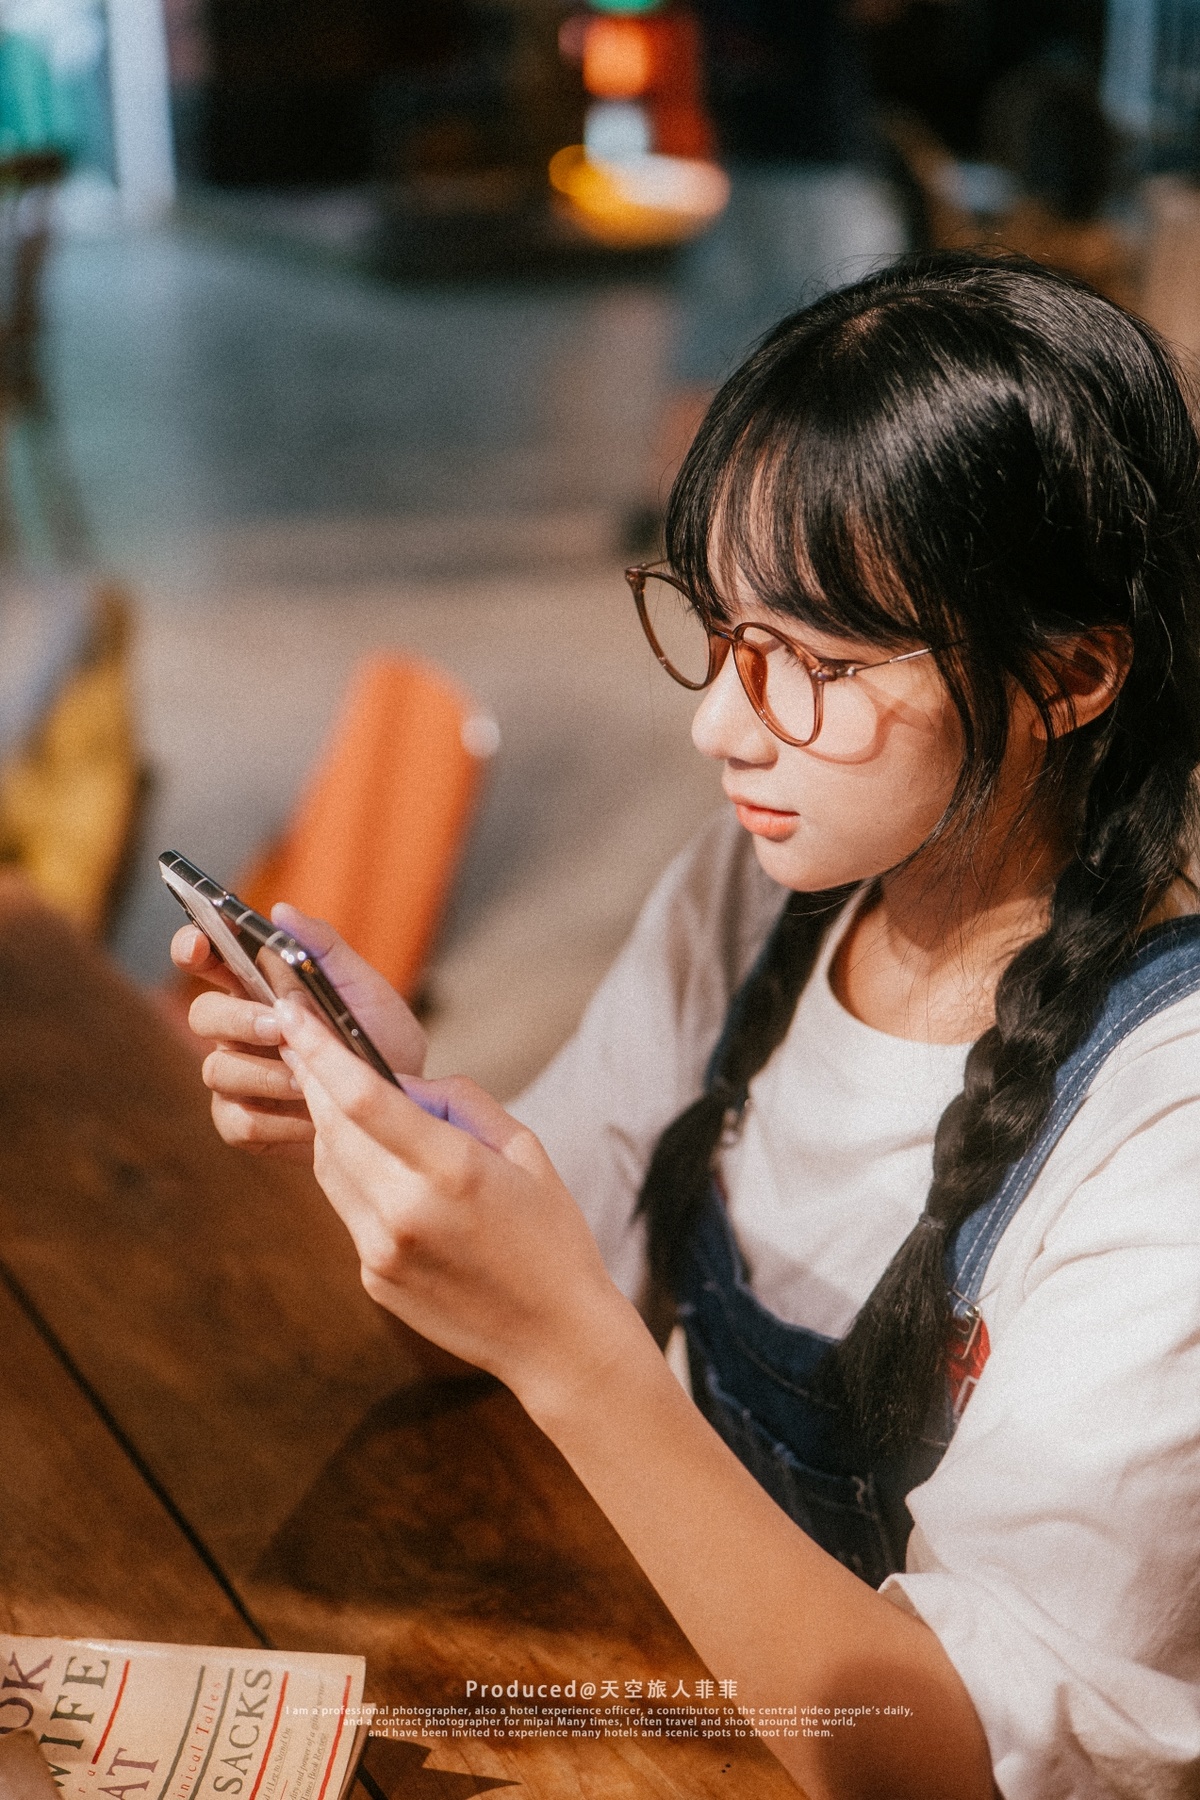 一位戴着眼镜的年轻女子坐在木桌旁看手机